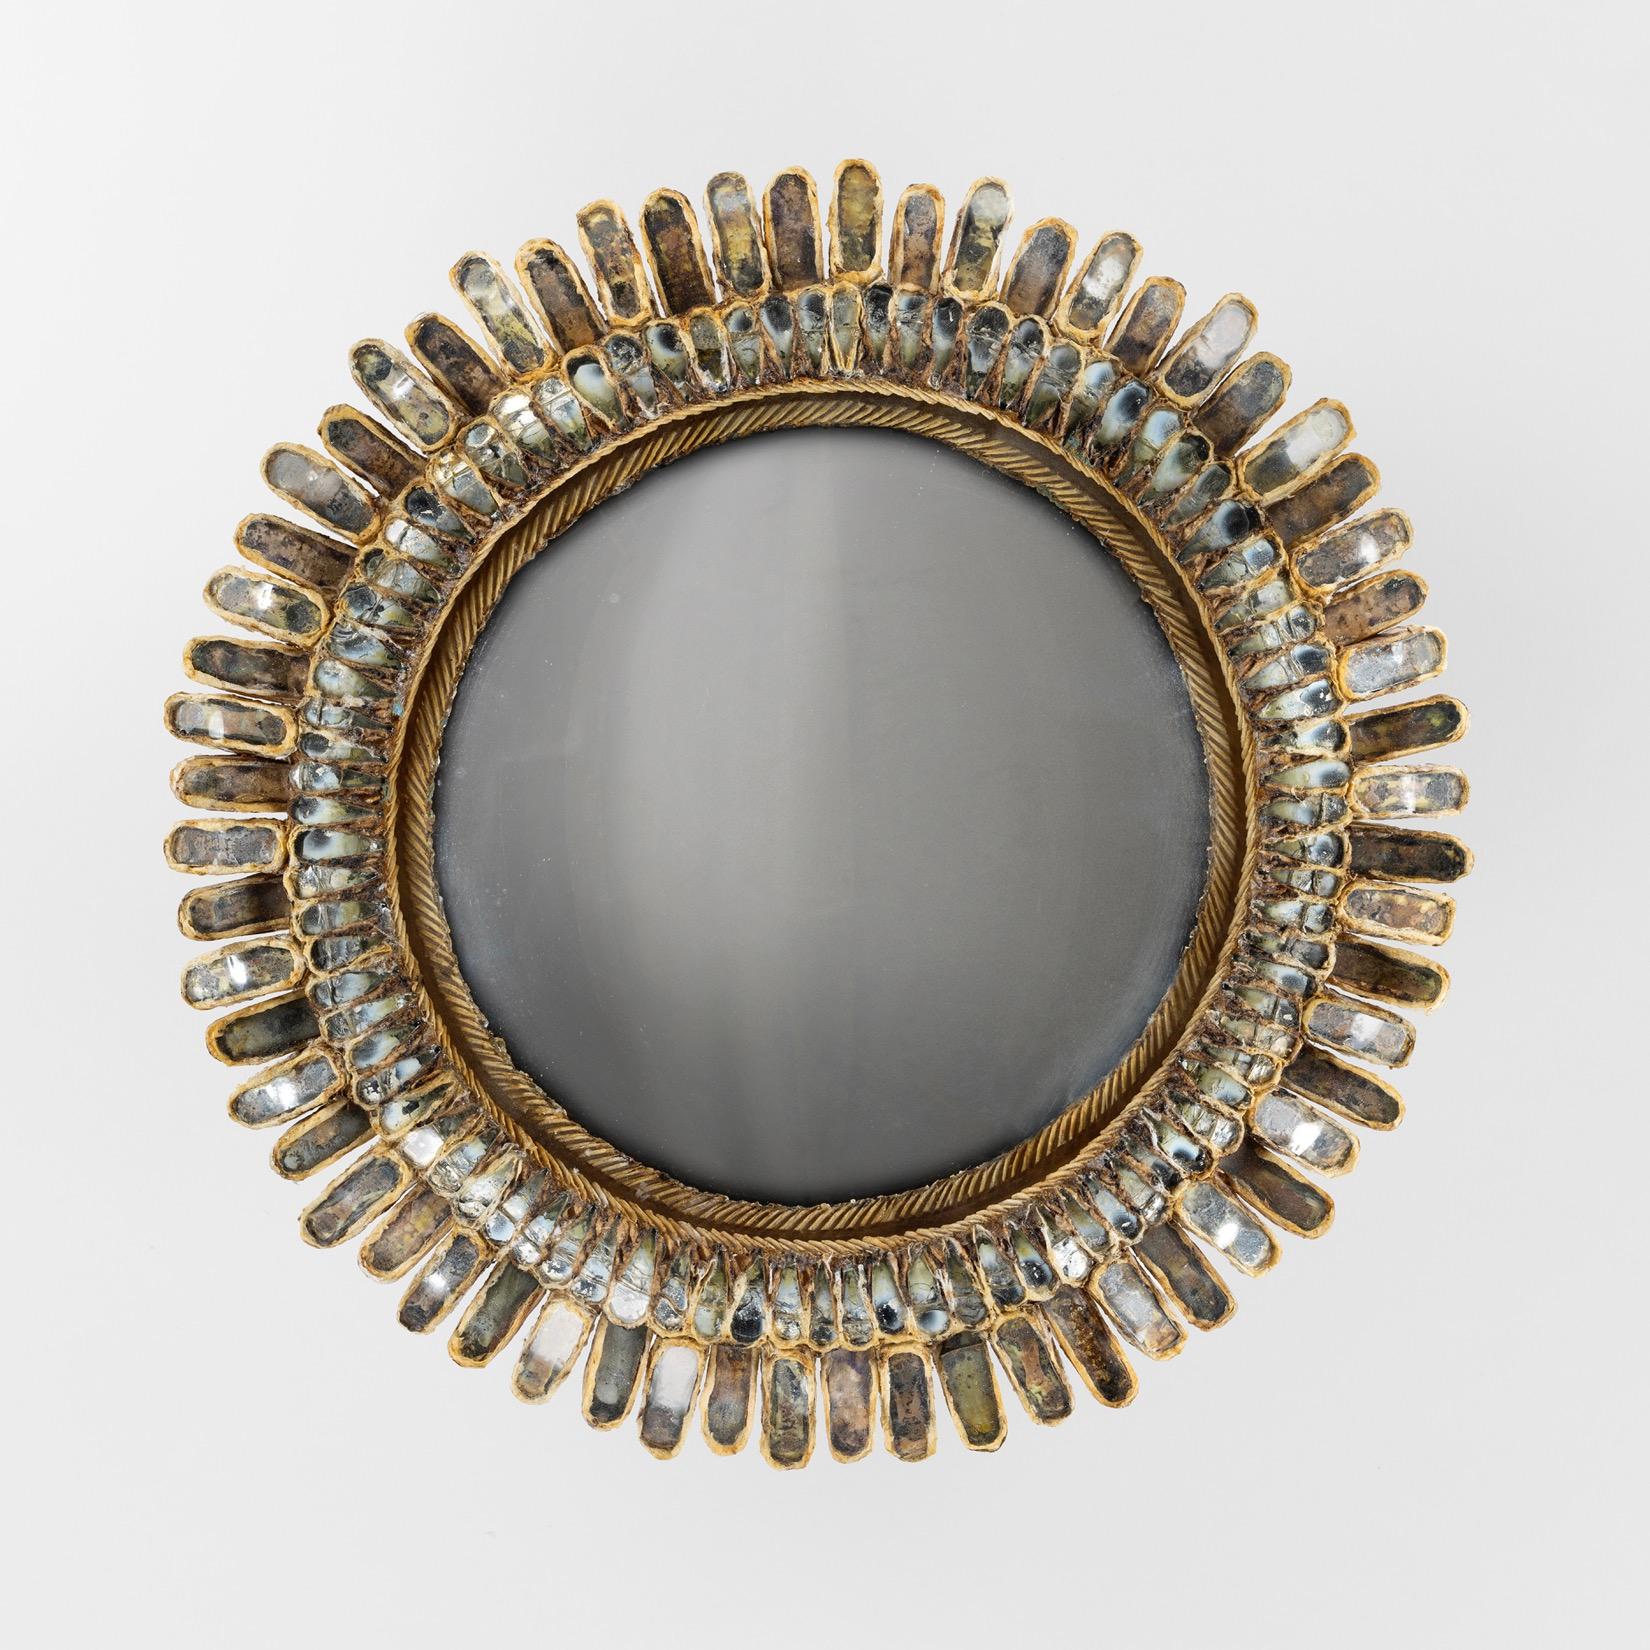 Line Vautrin s'est inspirée de la fleur de marguerite (Marguerite en français) pour imaginer cet élégant miroir composé d'une rangée de 60 pétales façonnés alternativement vers l'avant et vers l'arrière.
La sorcière centrale convexe est entourée